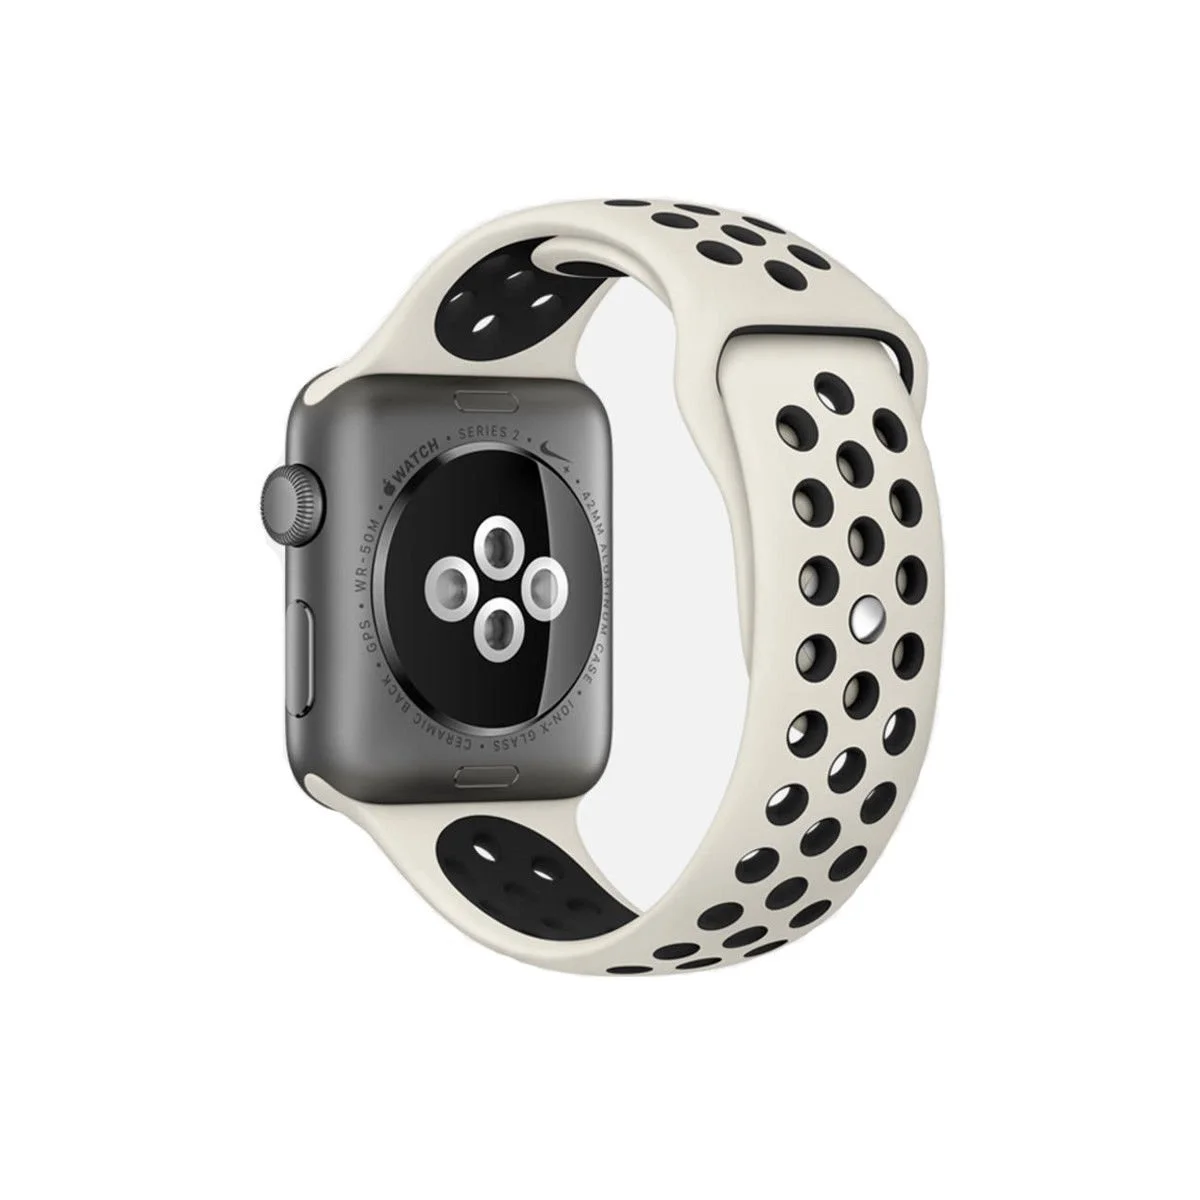 Řemínek iMore SPORT pro Apple Watch Series 1/2/3 (38mm) - Anticky bílý/Černý